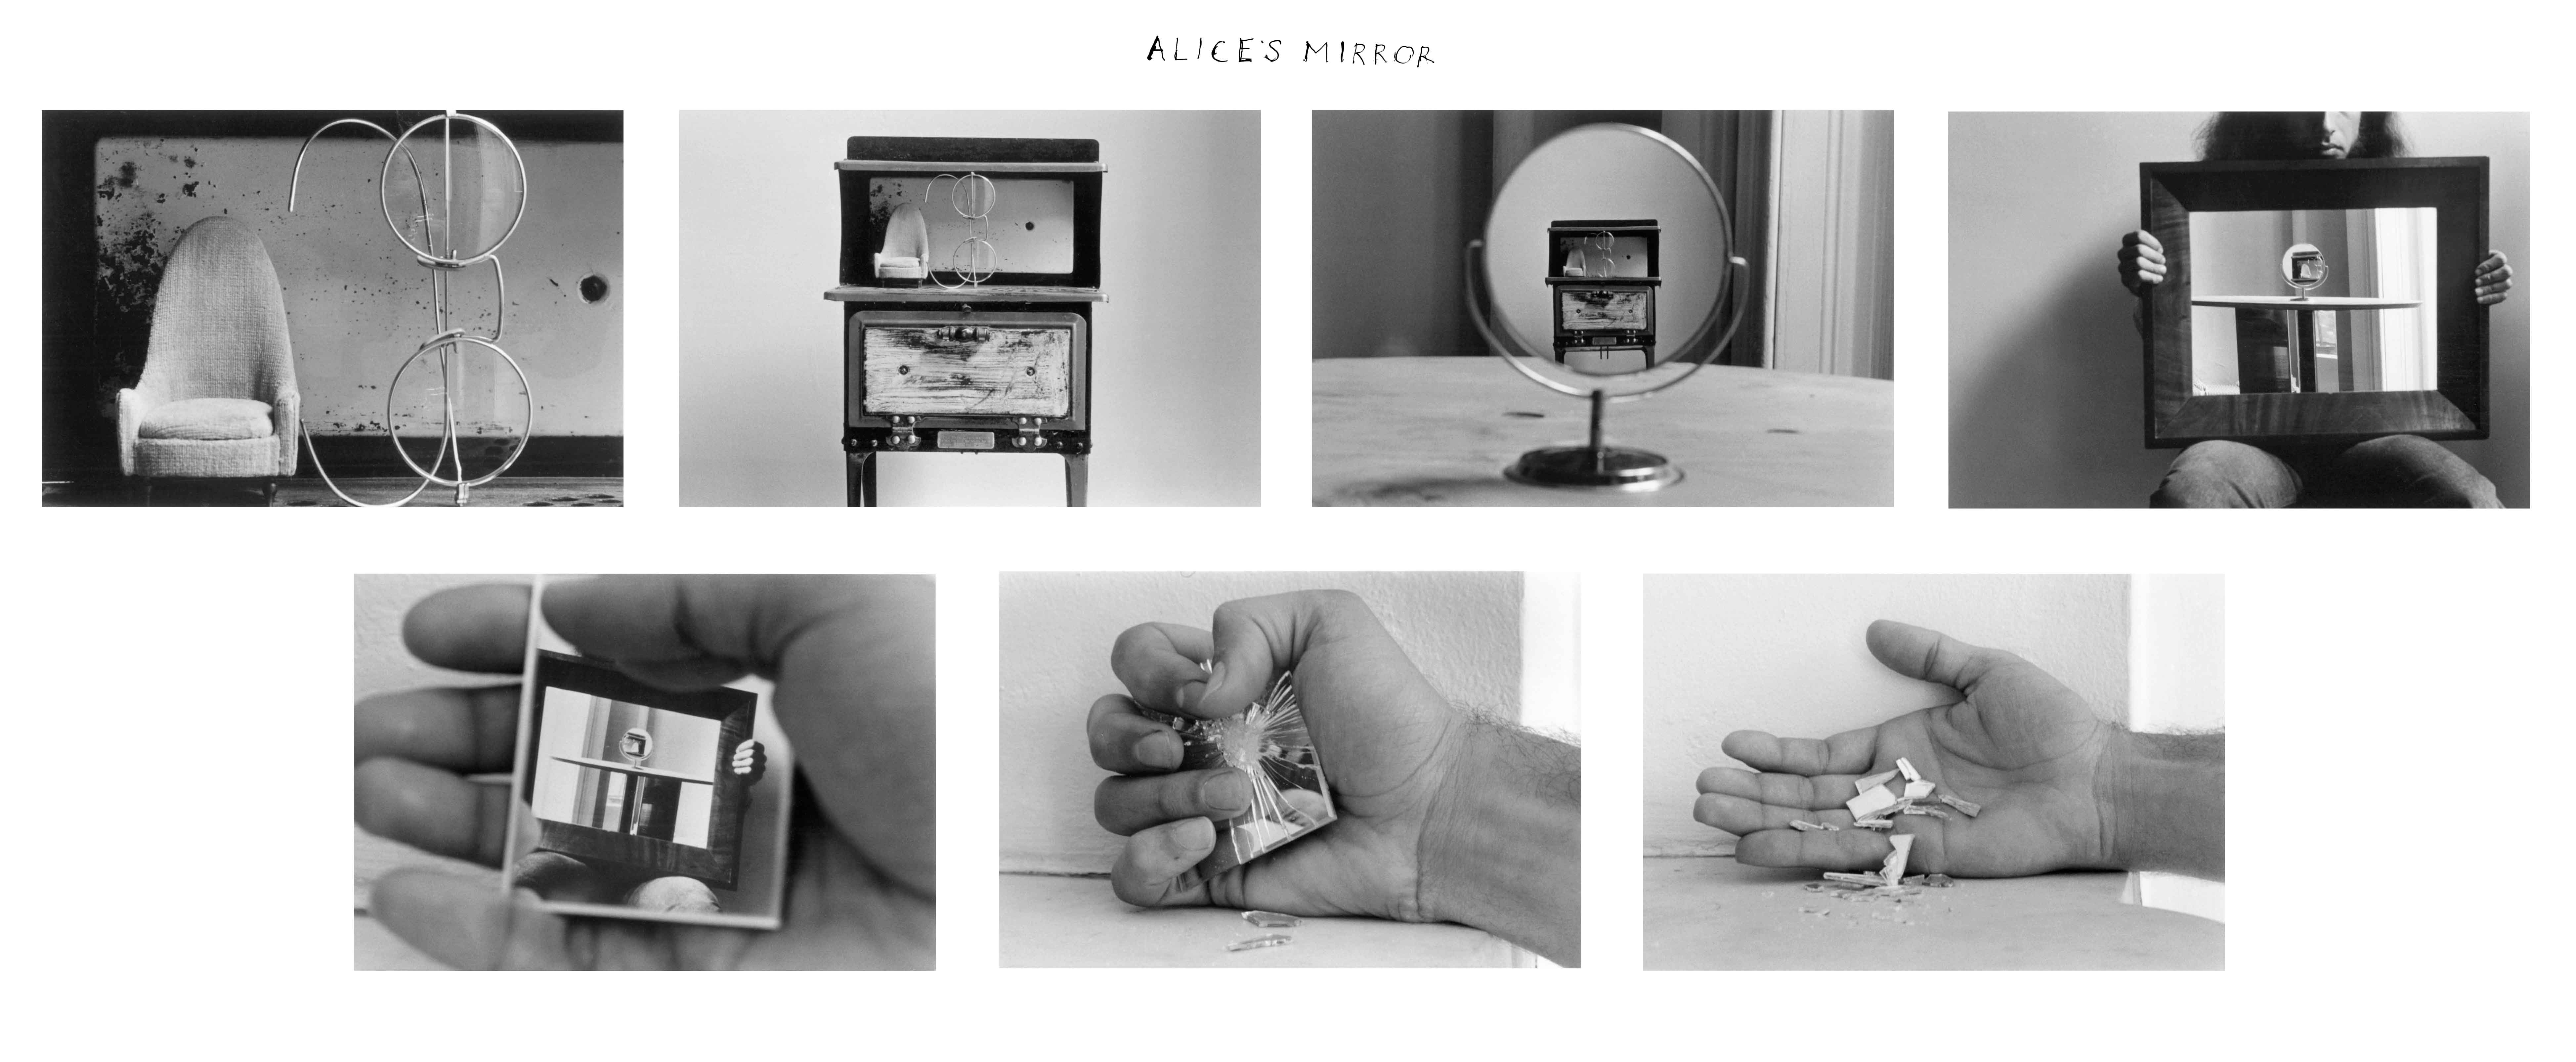 Alices-Mirror-1